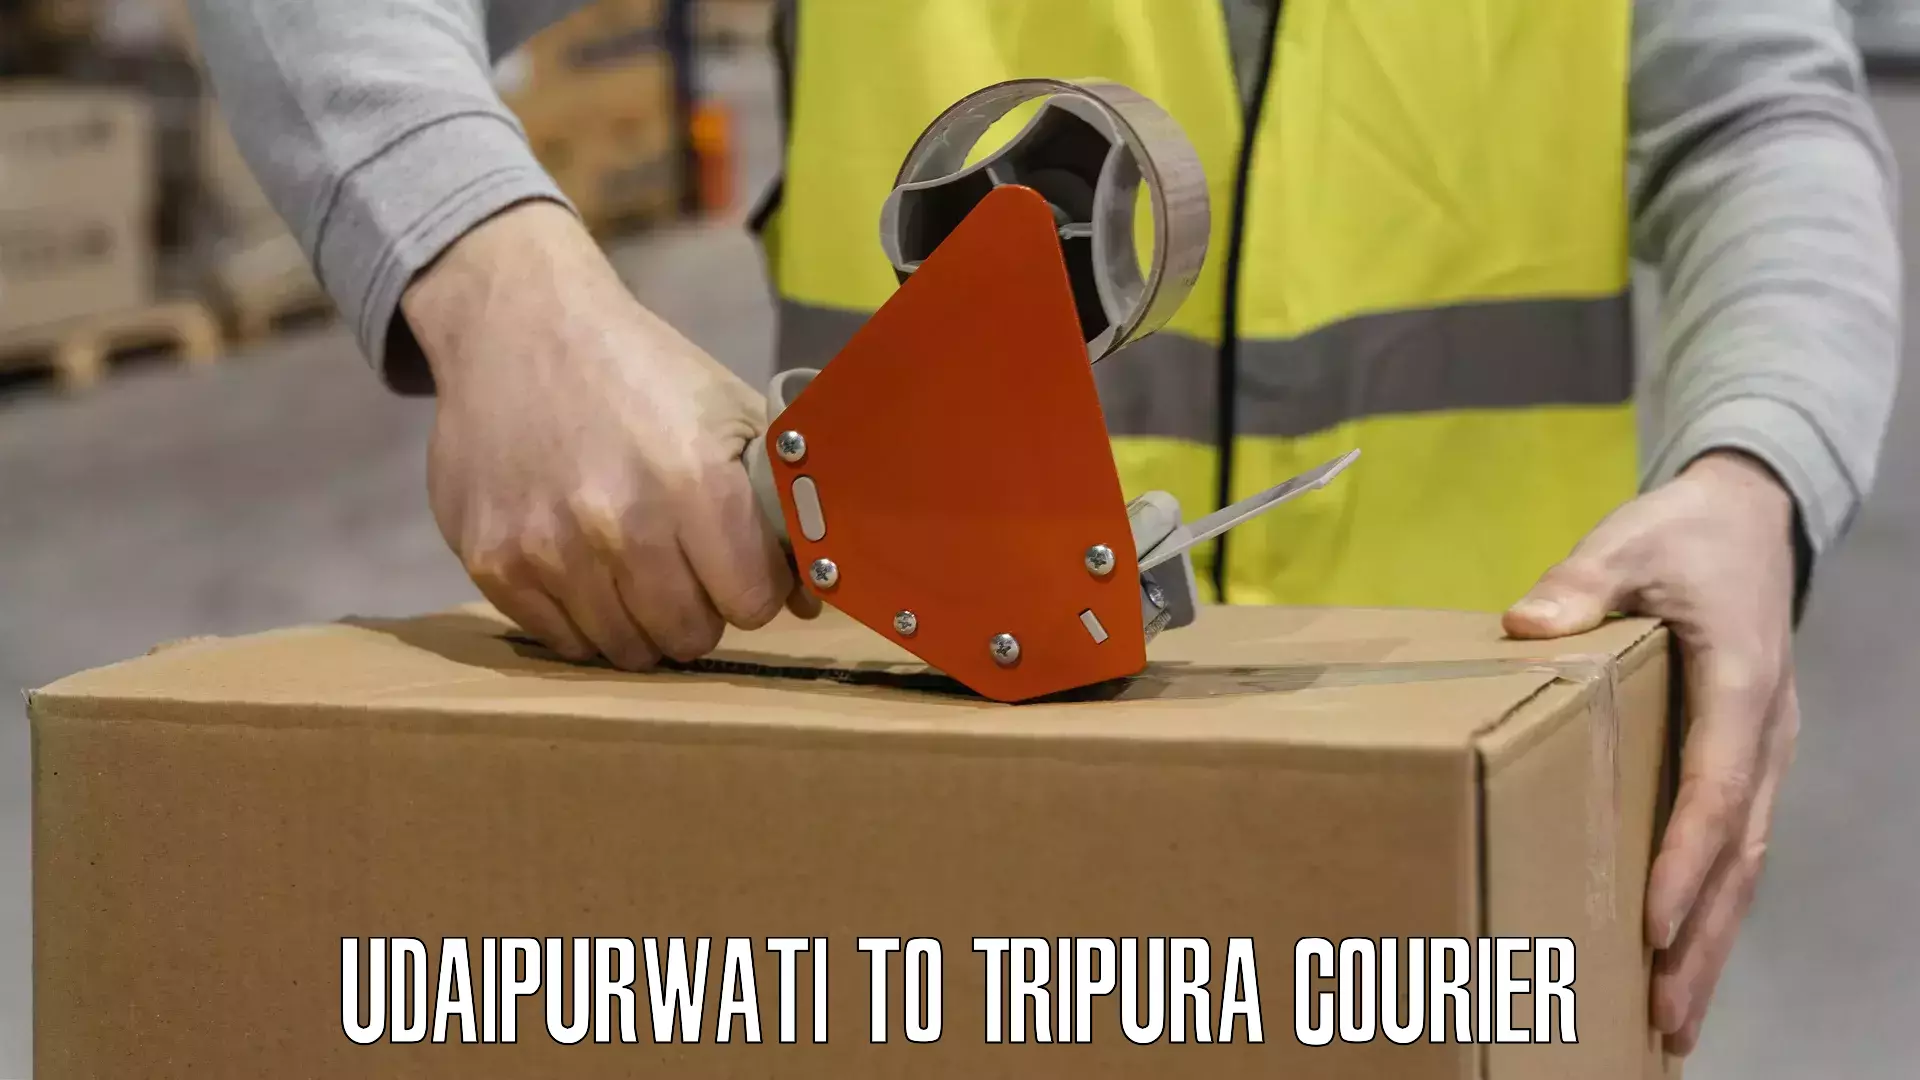 Logistics solutions Udaipurwati to IIIT Agartala